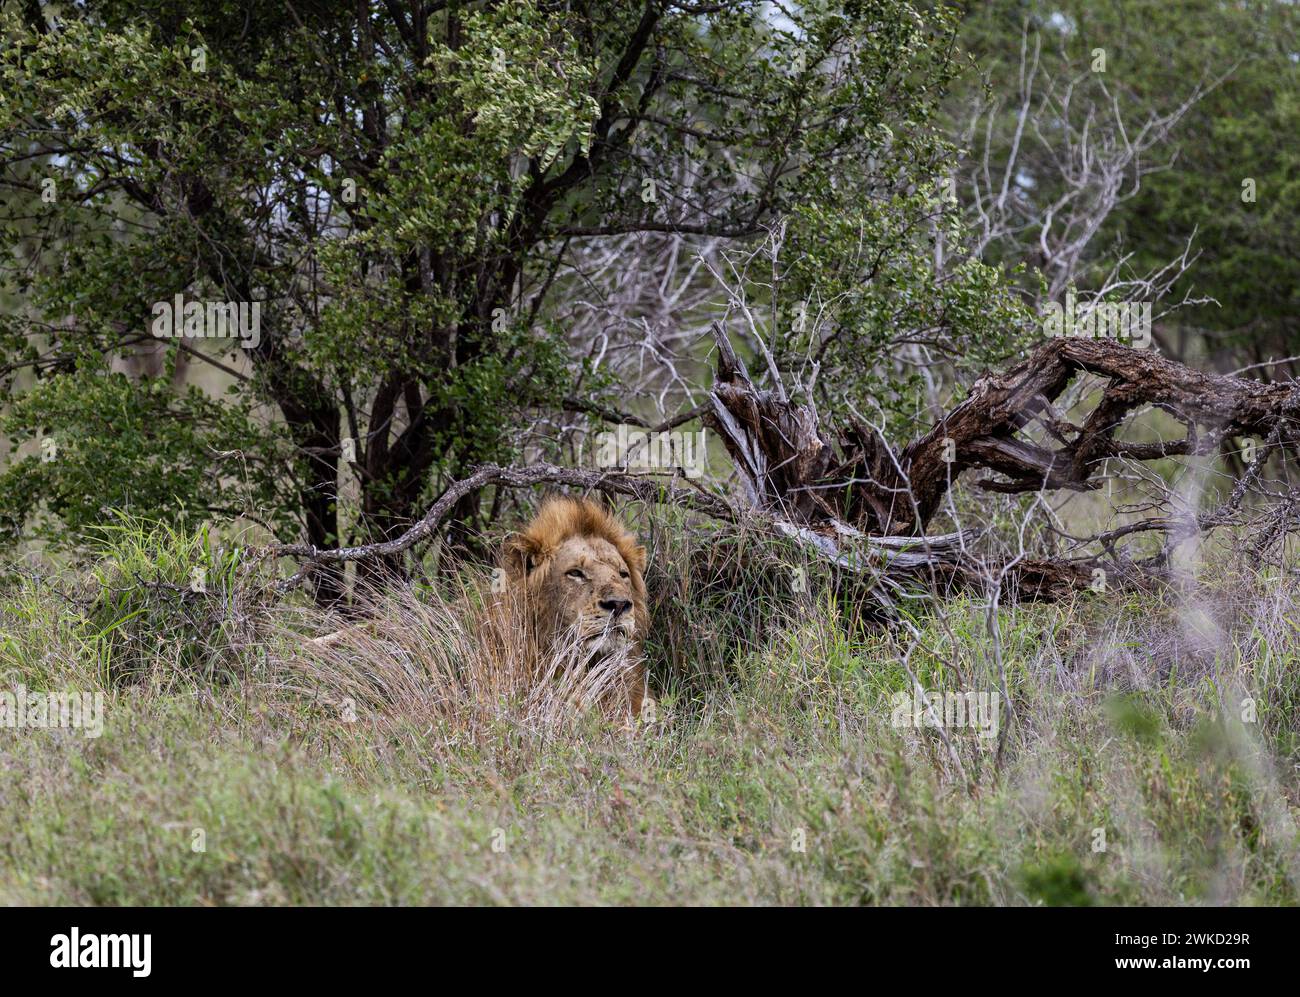 Un grande e bellissimo leone africano in un habitat naturale, nella natura selvaggia, si trova in erba verde cespugli. Safari nella savana del Sudafrica. Carta da parati animali Foto Stock